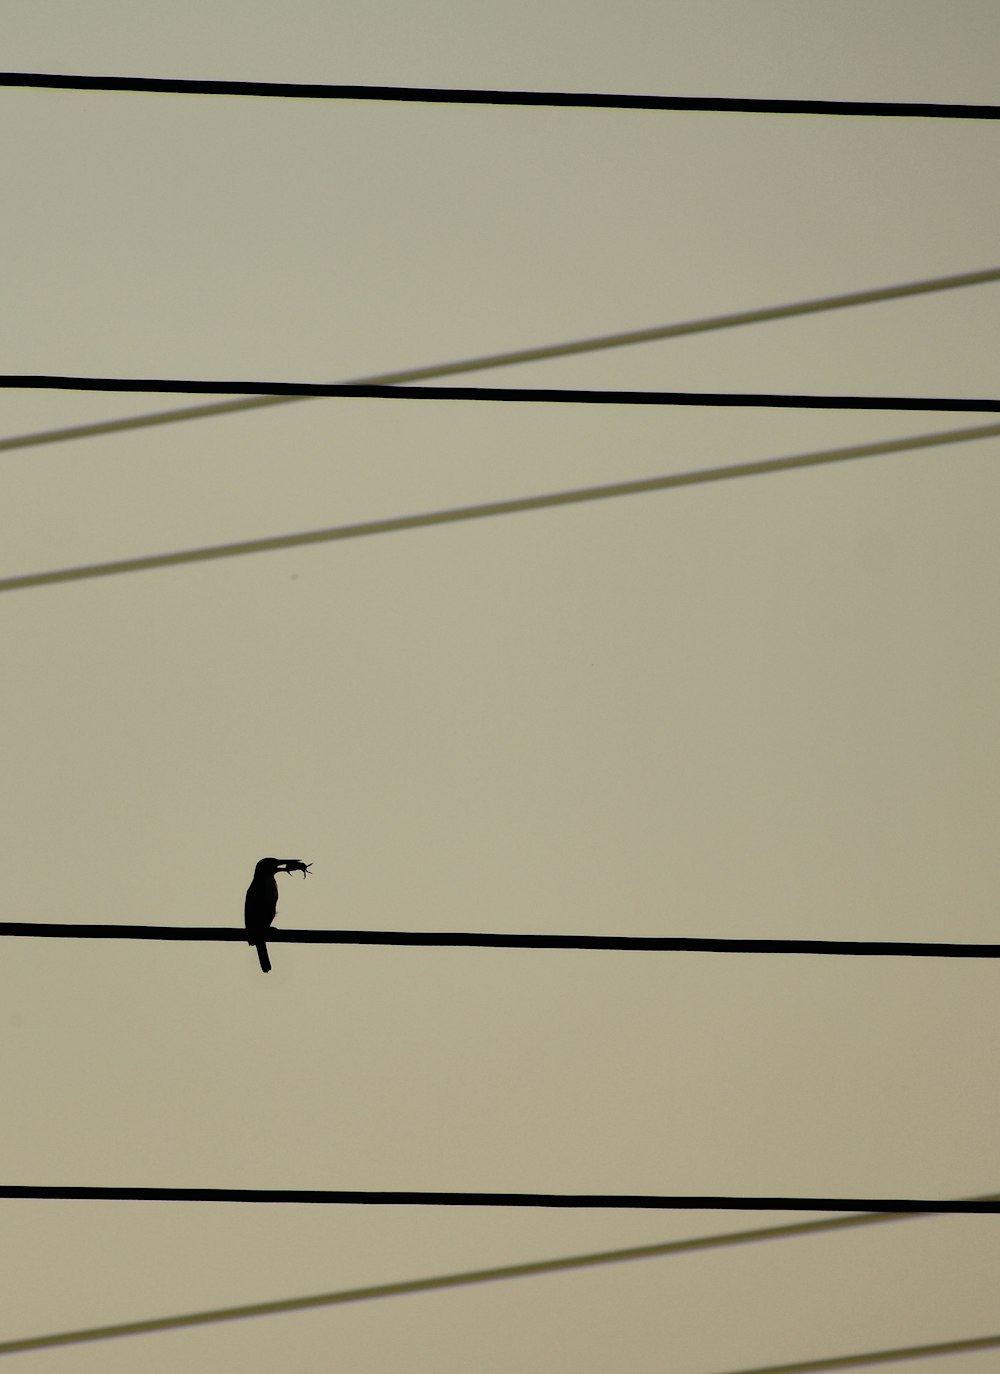 a bird on a power line